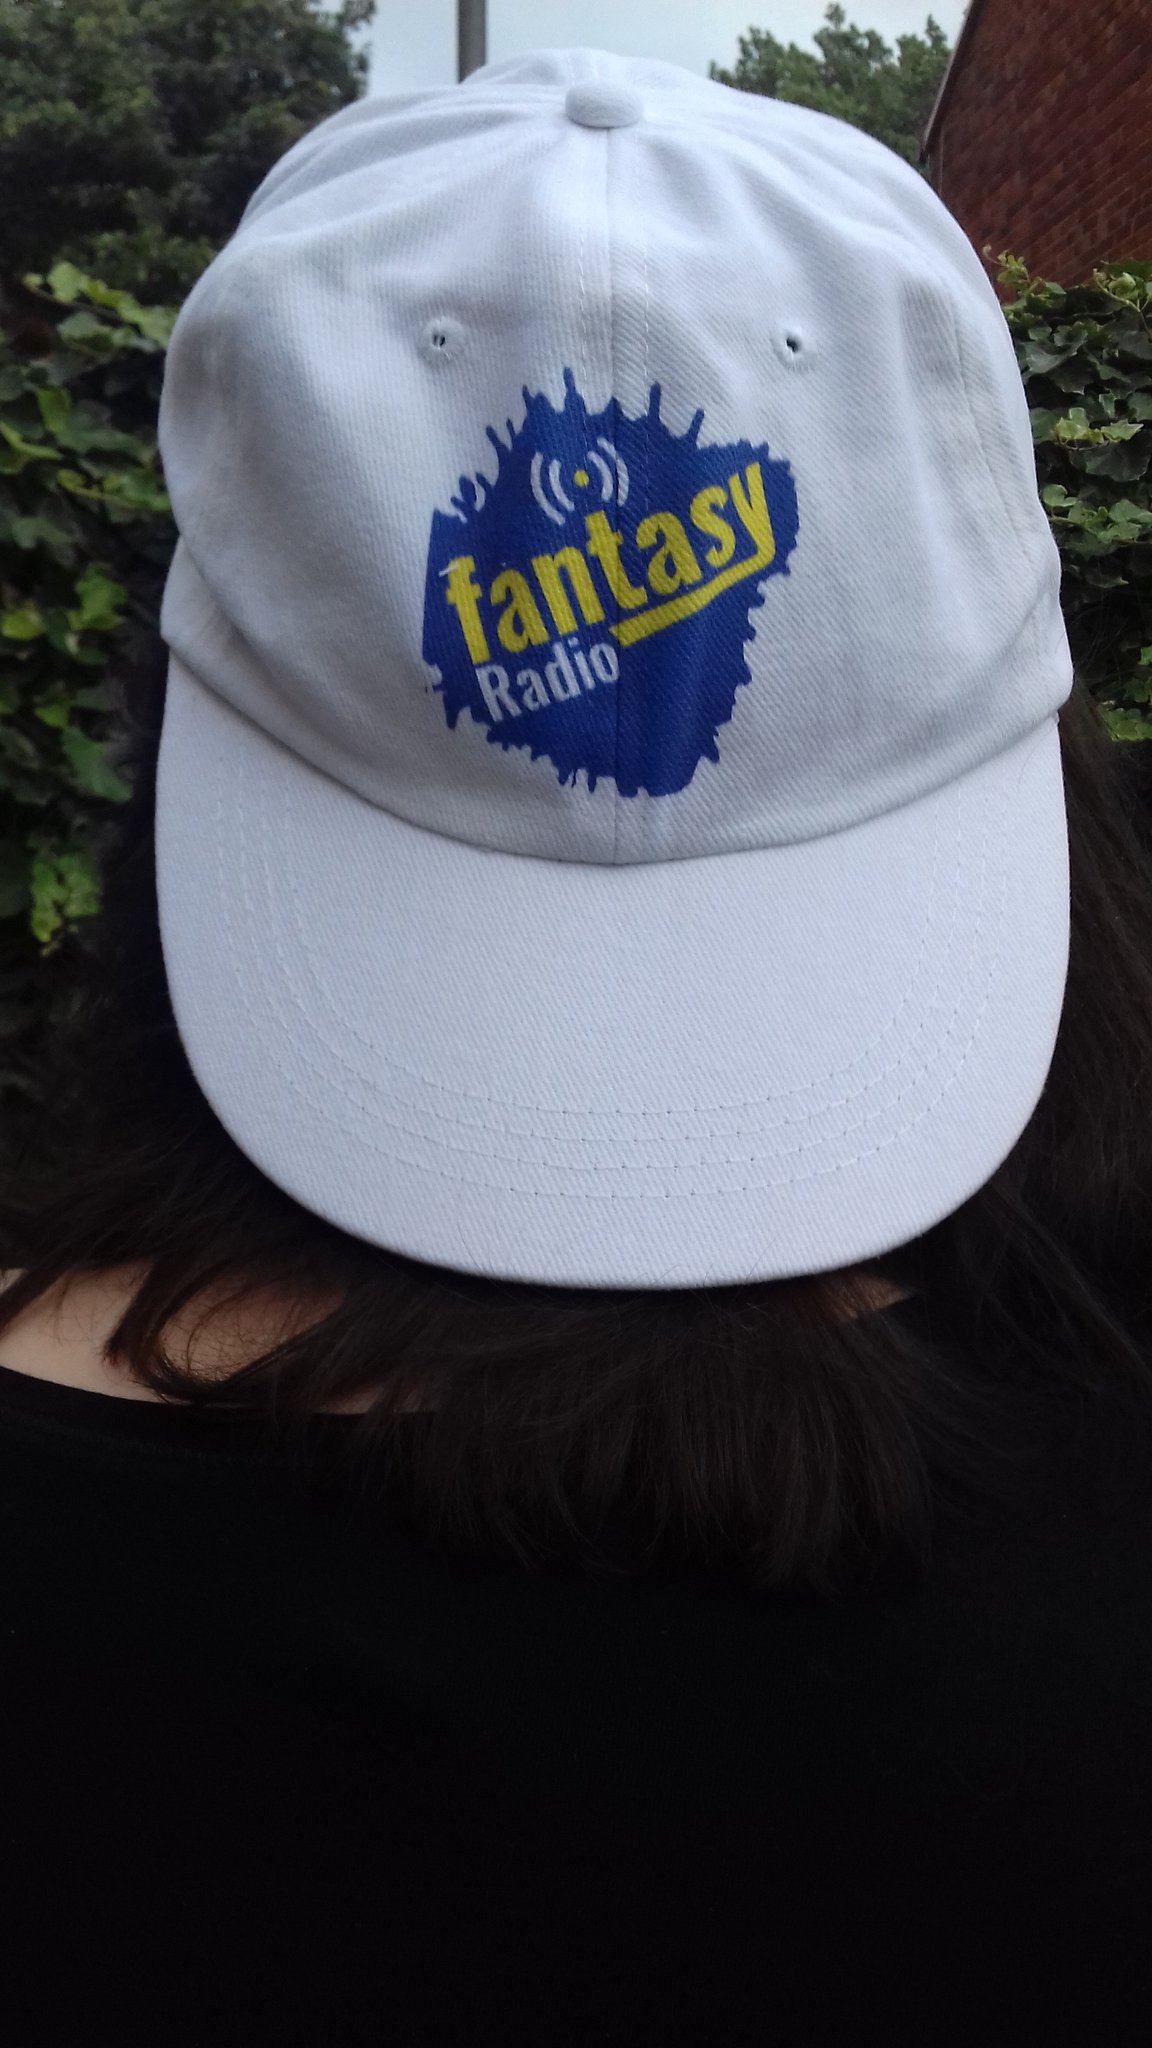 Suzy P exclusive to Fantasy Radio